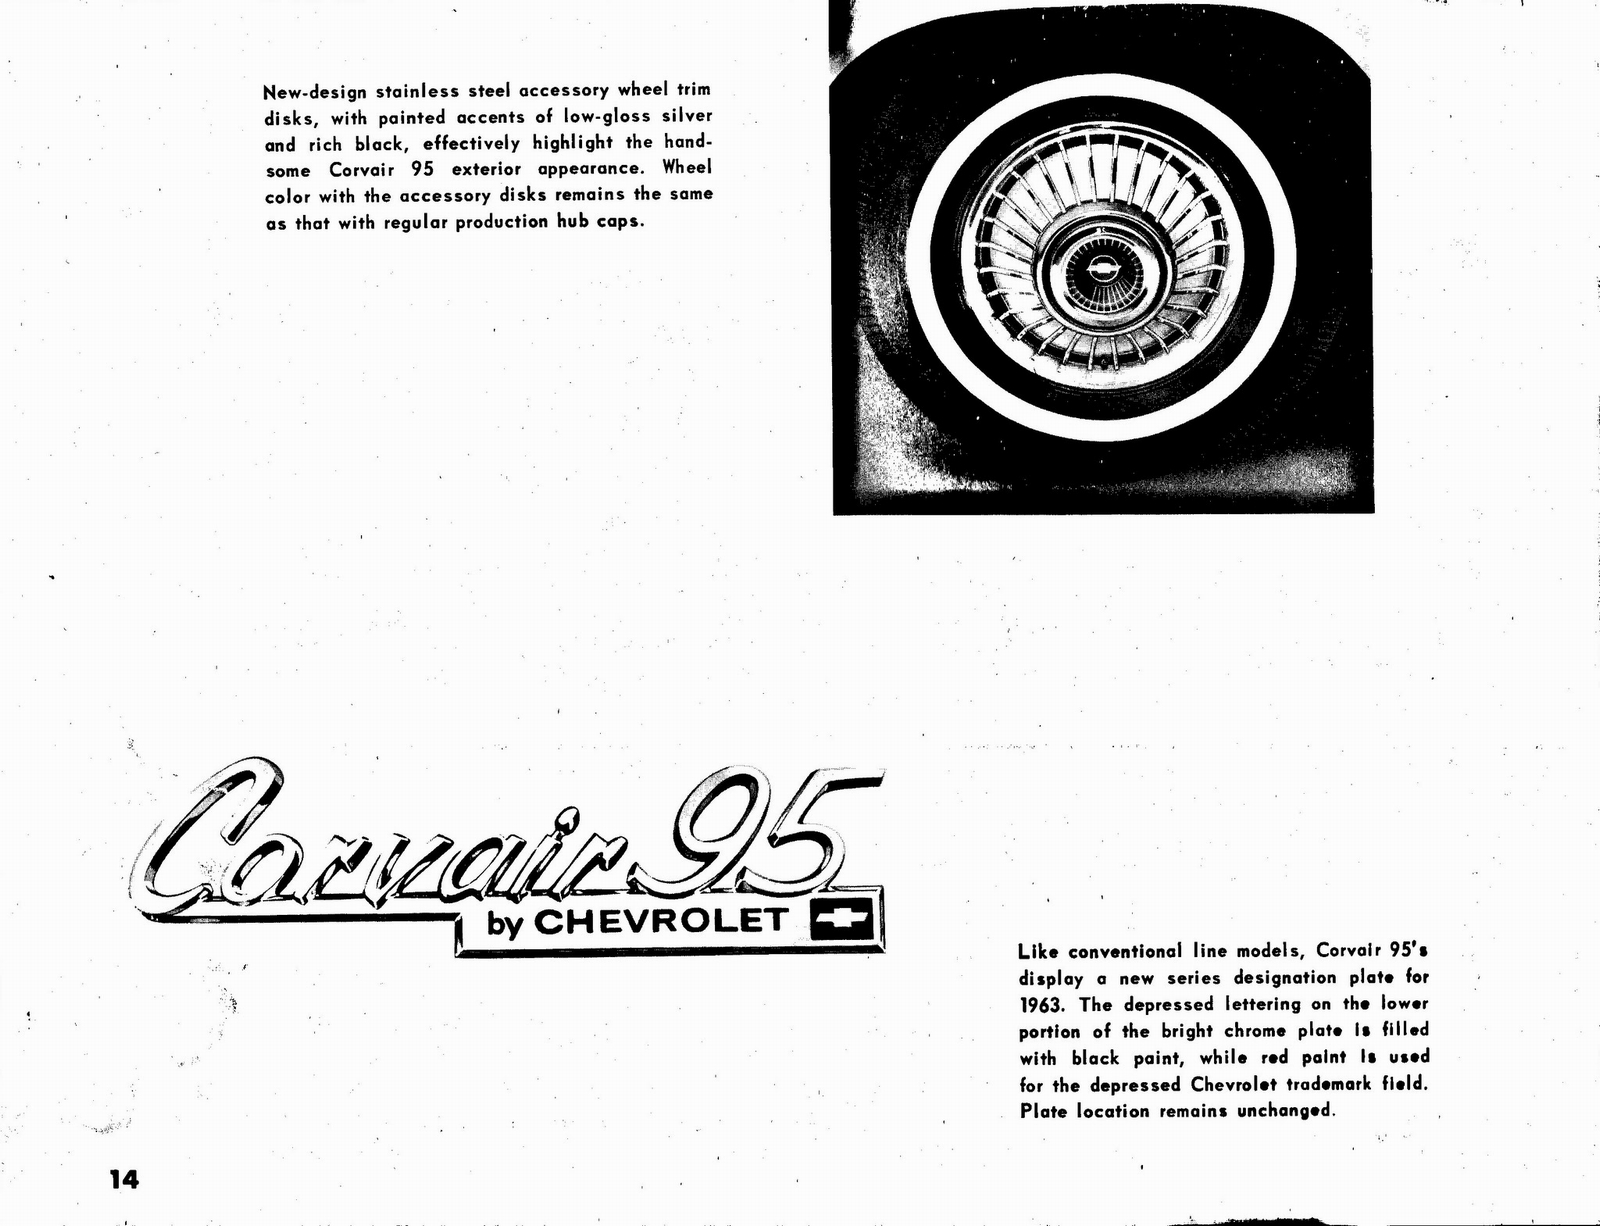 n_1963 Chevrolet Truck Engineering Features-14.jpg